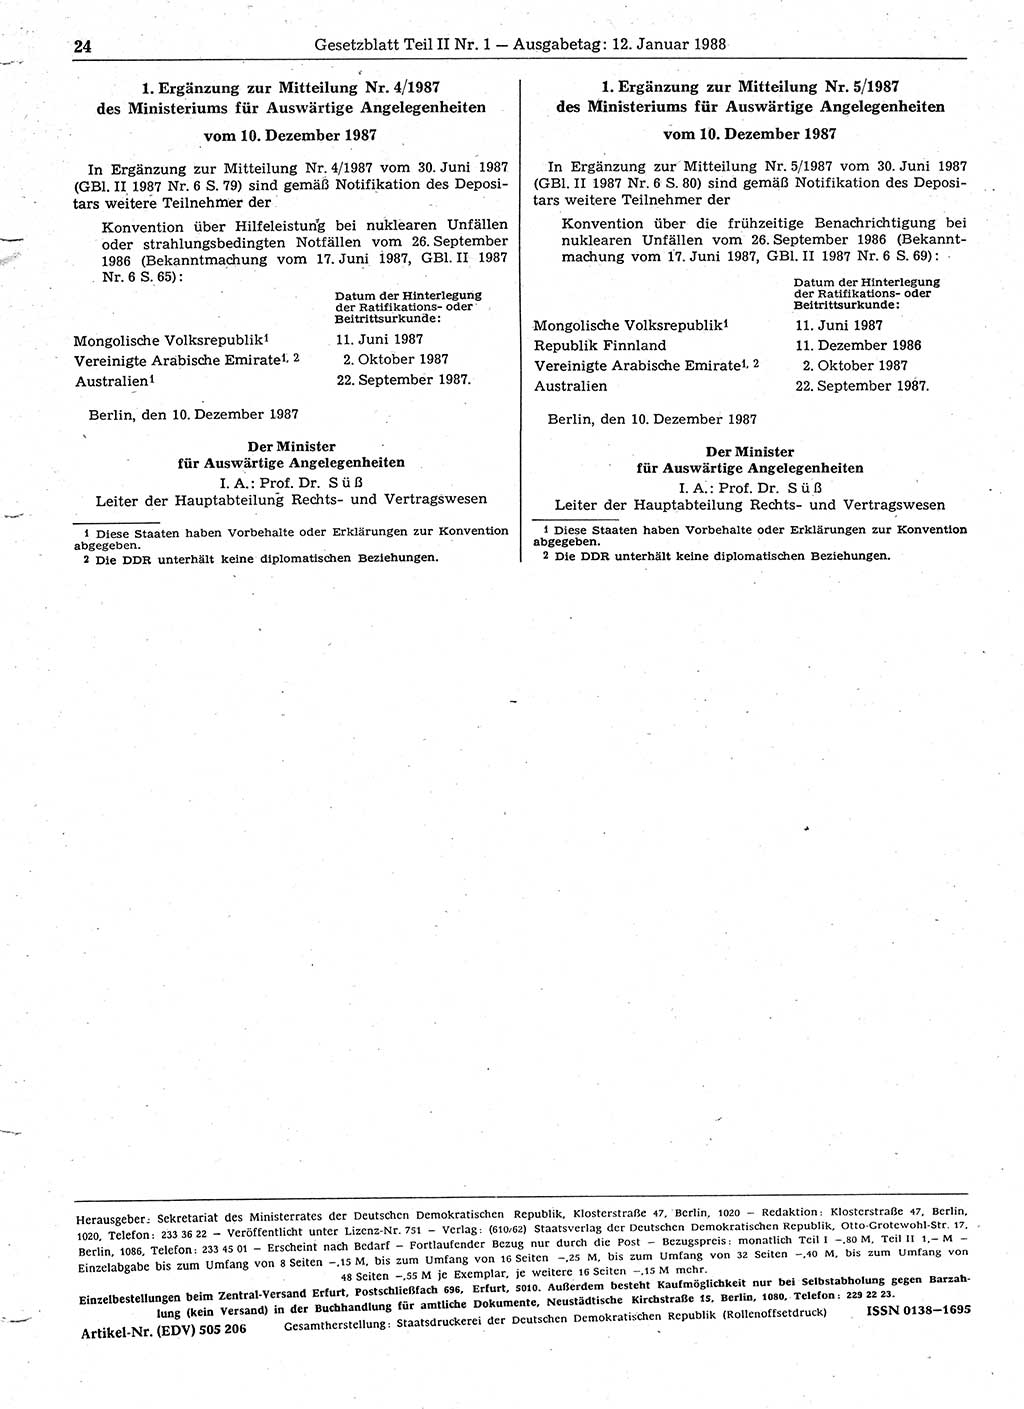 Gesetzblatt (GBl.) der Deutschen Demokratischen Republik (DDR) Teil ⅠⅠ 1988, Seite 24 (GBl. DDR ⅠⅠ 1988, S. 24)